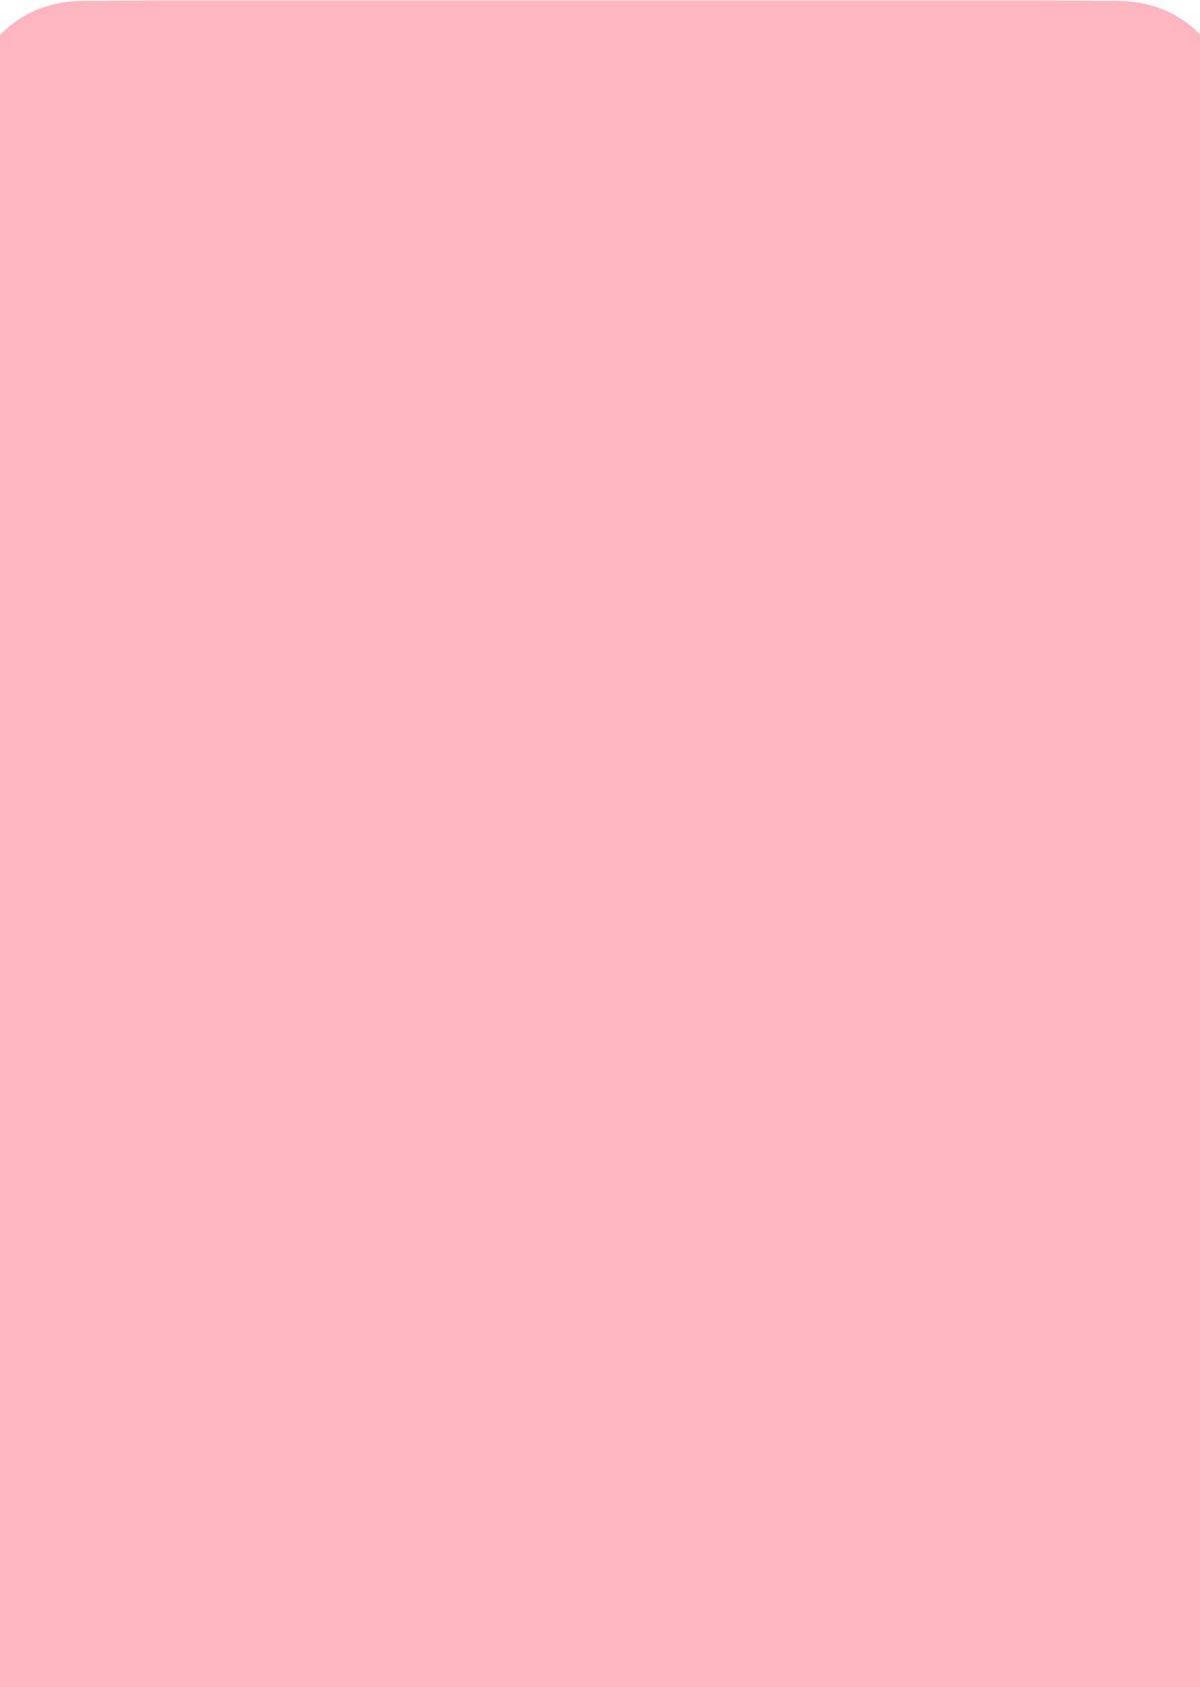 Kobo Clara 2E eReader 2022  Pastel Pink Skin